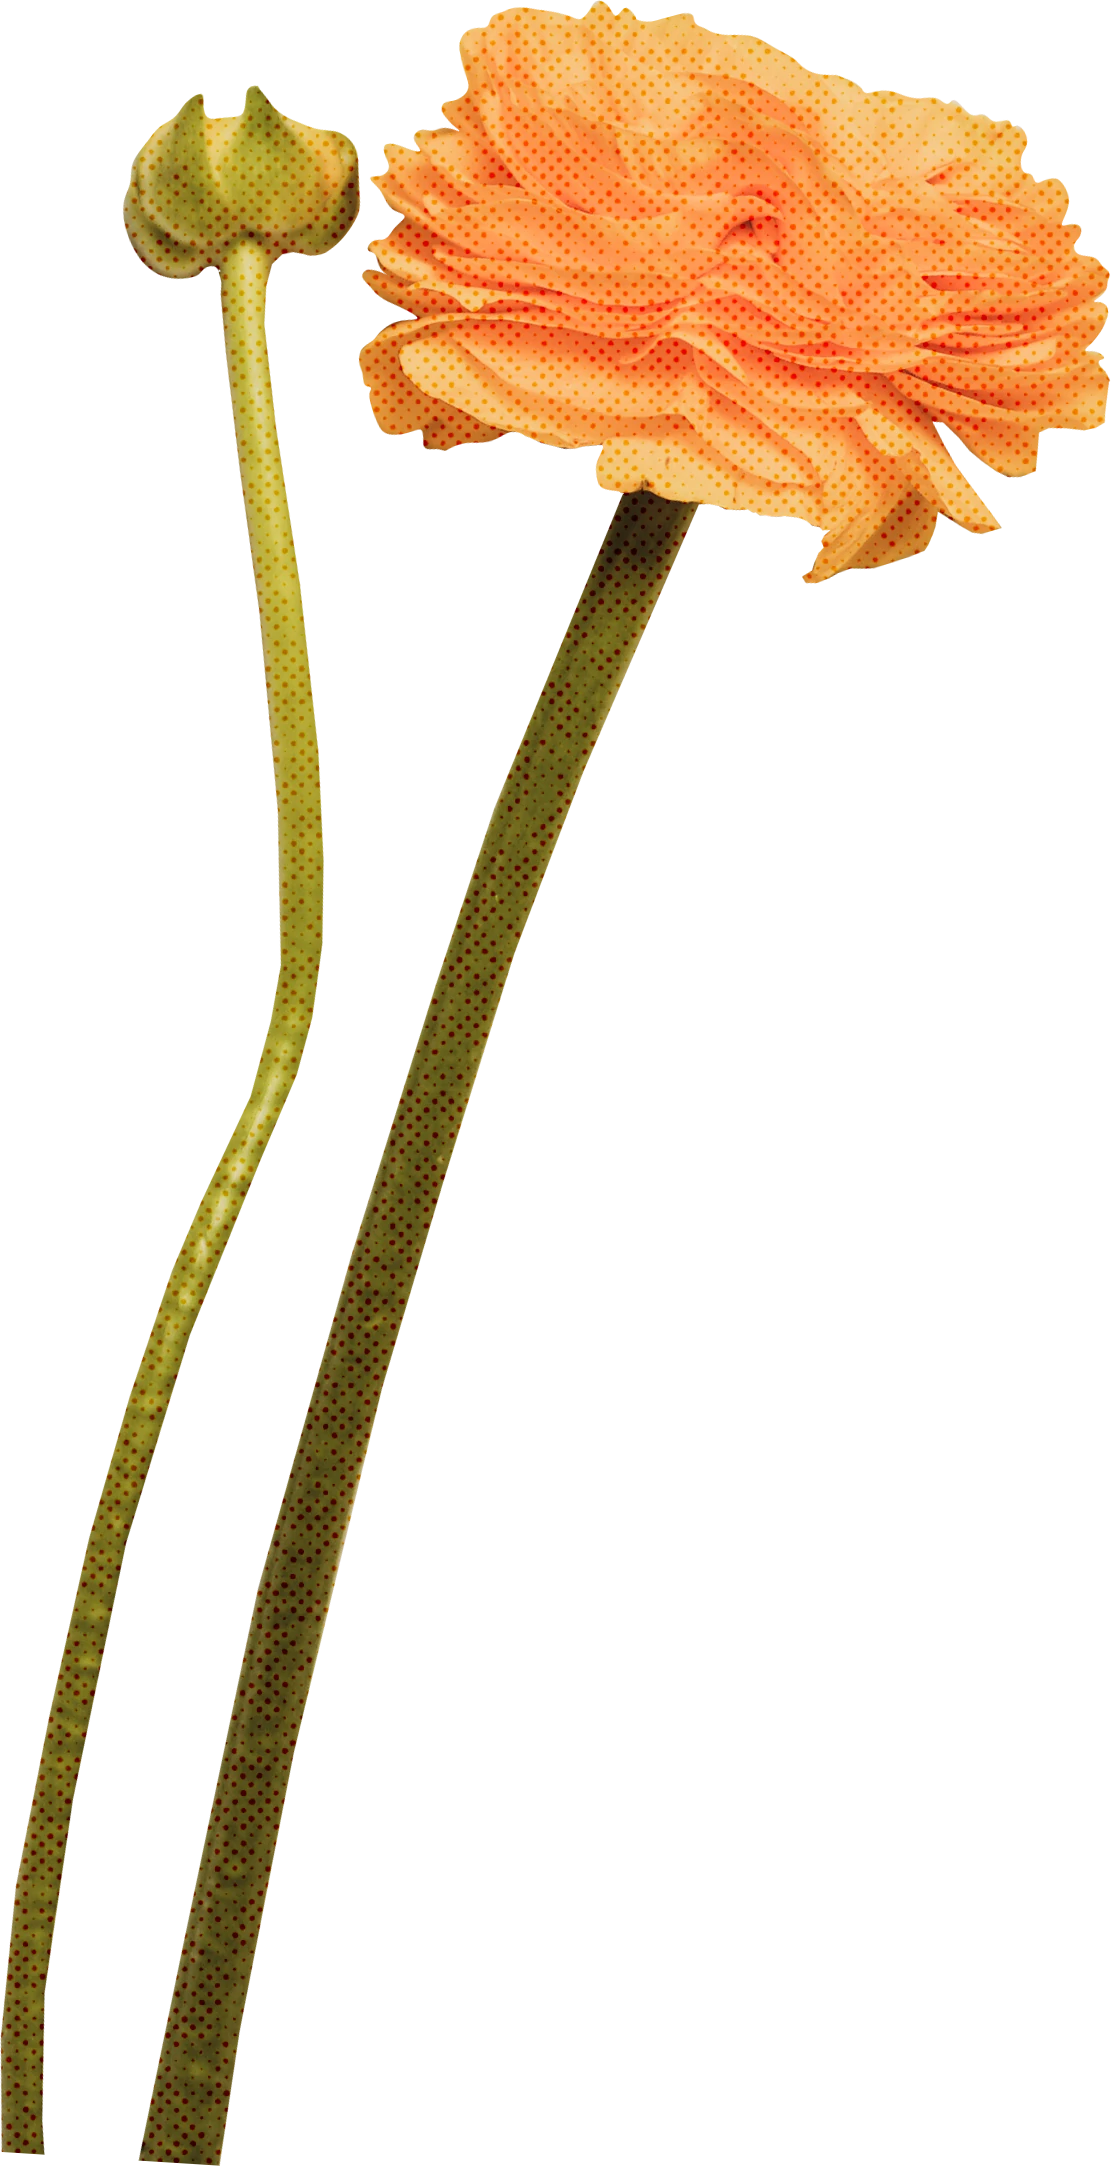 优雅复古花朵花卉植物字母装饰插画无缝背景PNG免抠手账设计素材【021】